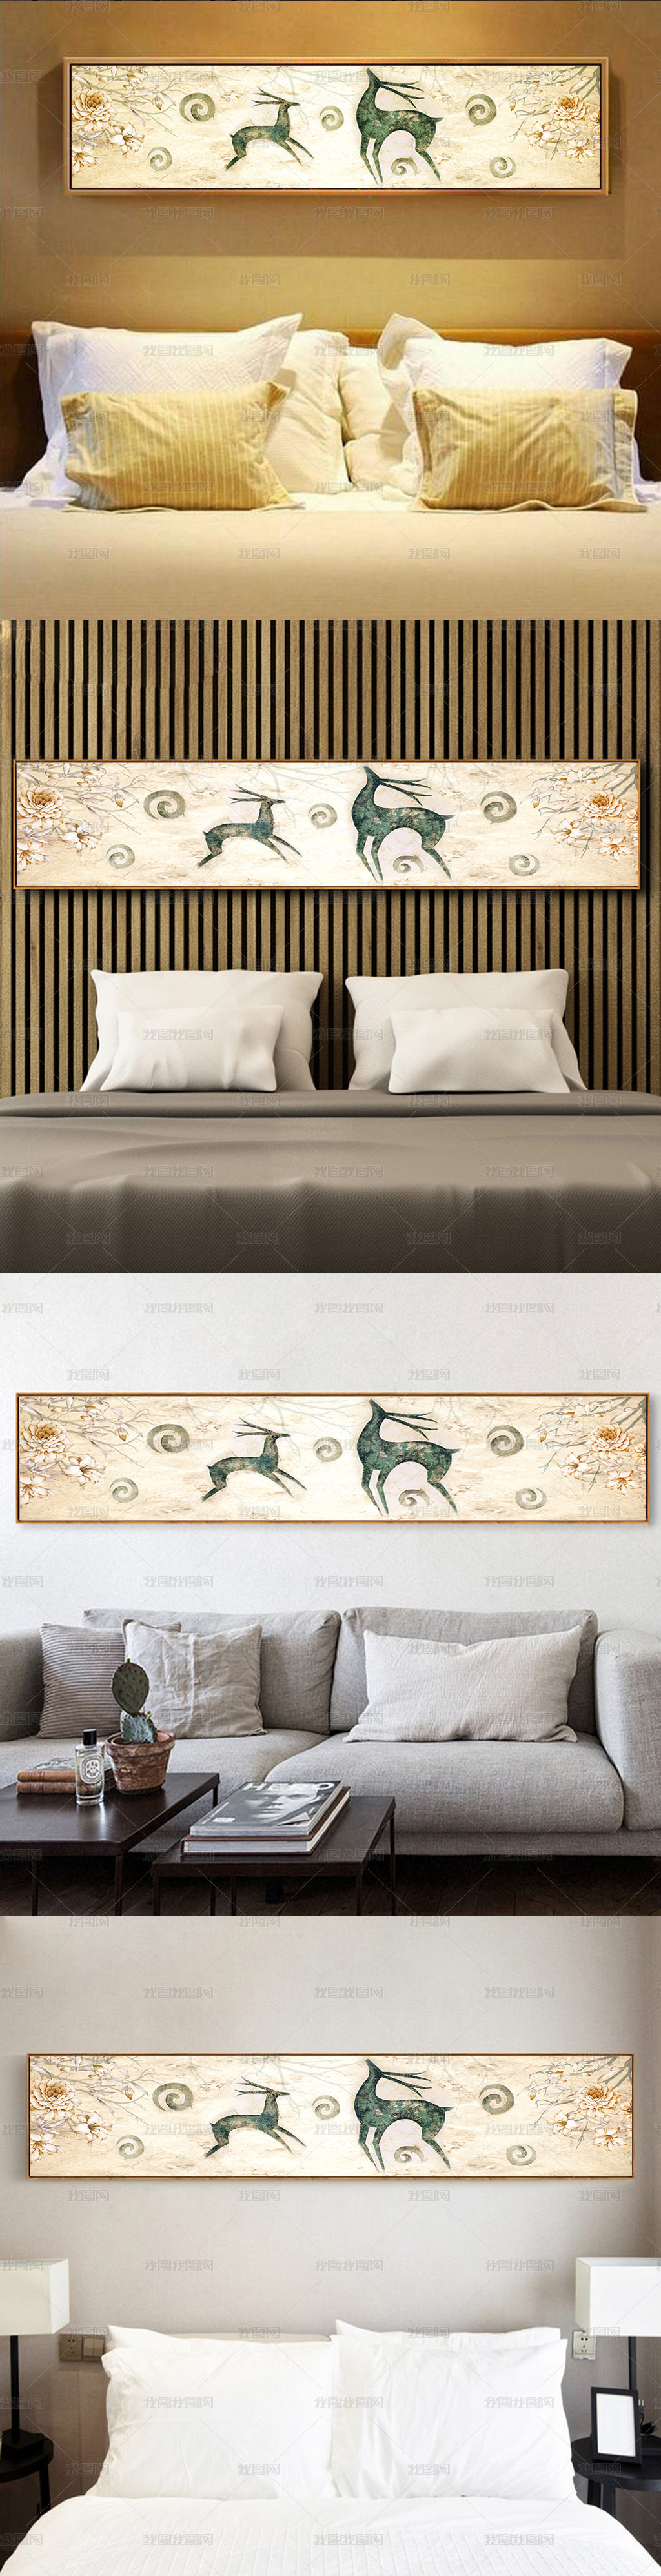 抽象手绘欧式麋鹿现代简约北欧床头无框画